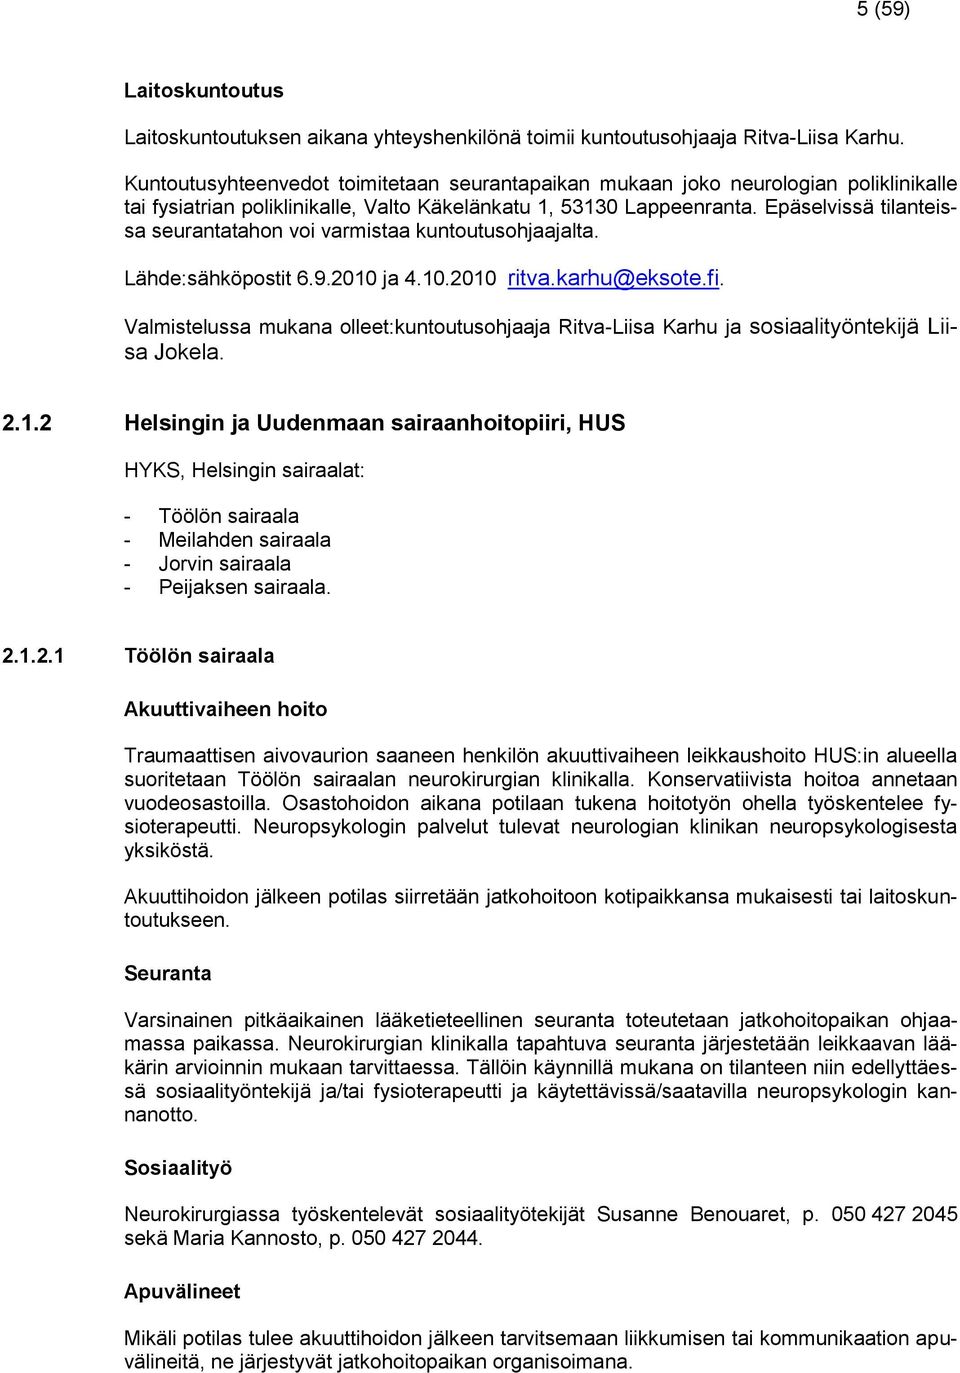 Epäselvissä tilanteissa seurantatahon voi varmistaa kuntoutusohjaajalta. Lähde:sähköpostit 6.9.2010 ja 4.10.2010 ritva.karhu@eksote.fi.